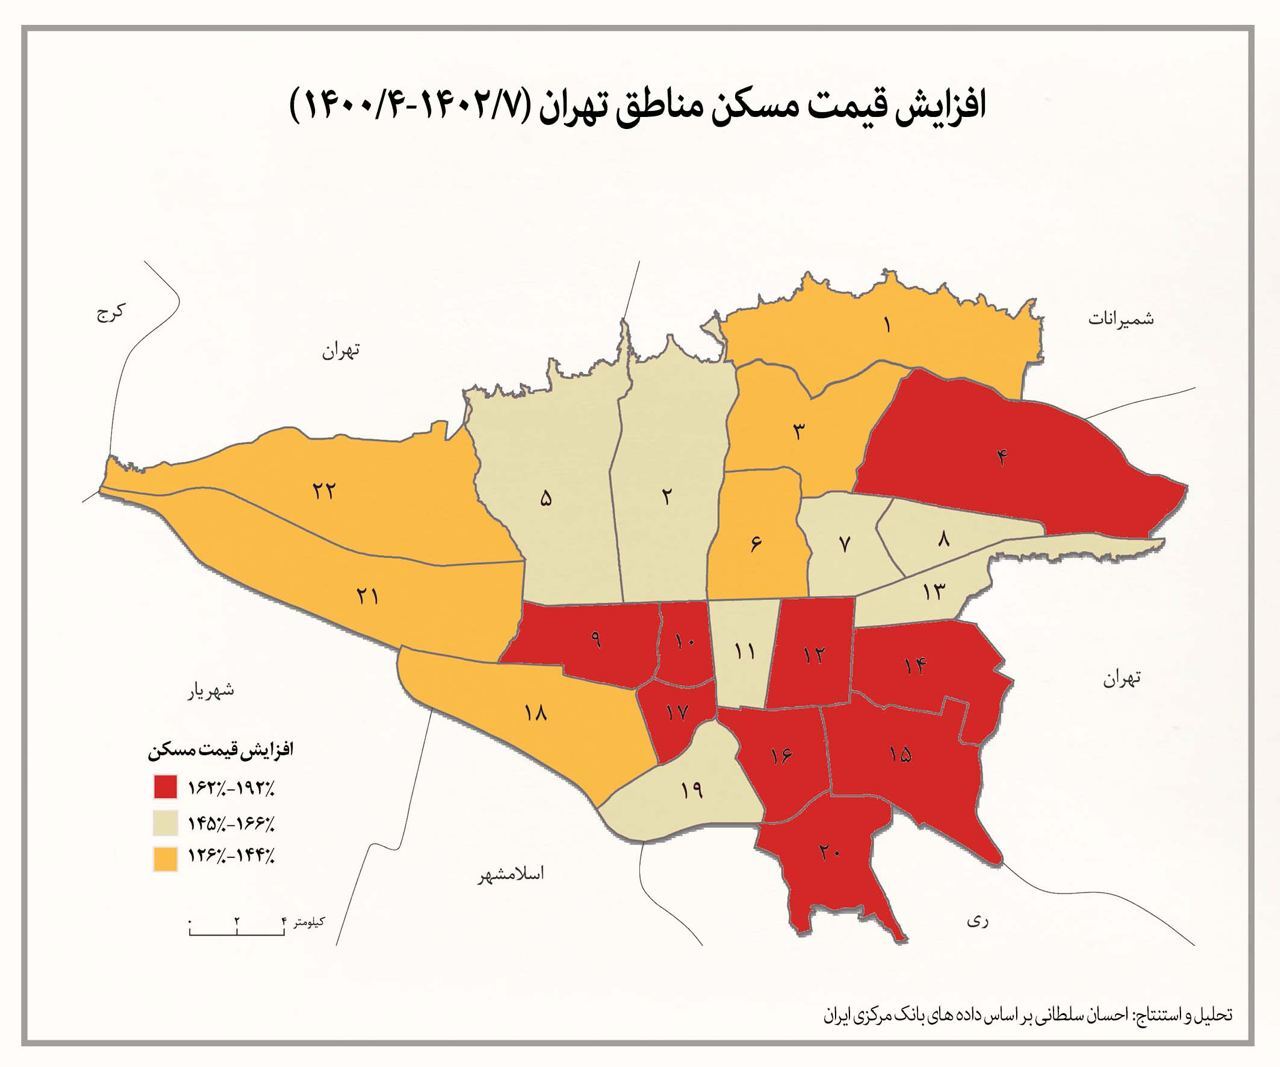 آمار هولناک از افزایش قیمت مسکن در تهران/ سلطانی : اجاره نشینی مصیبت شده است